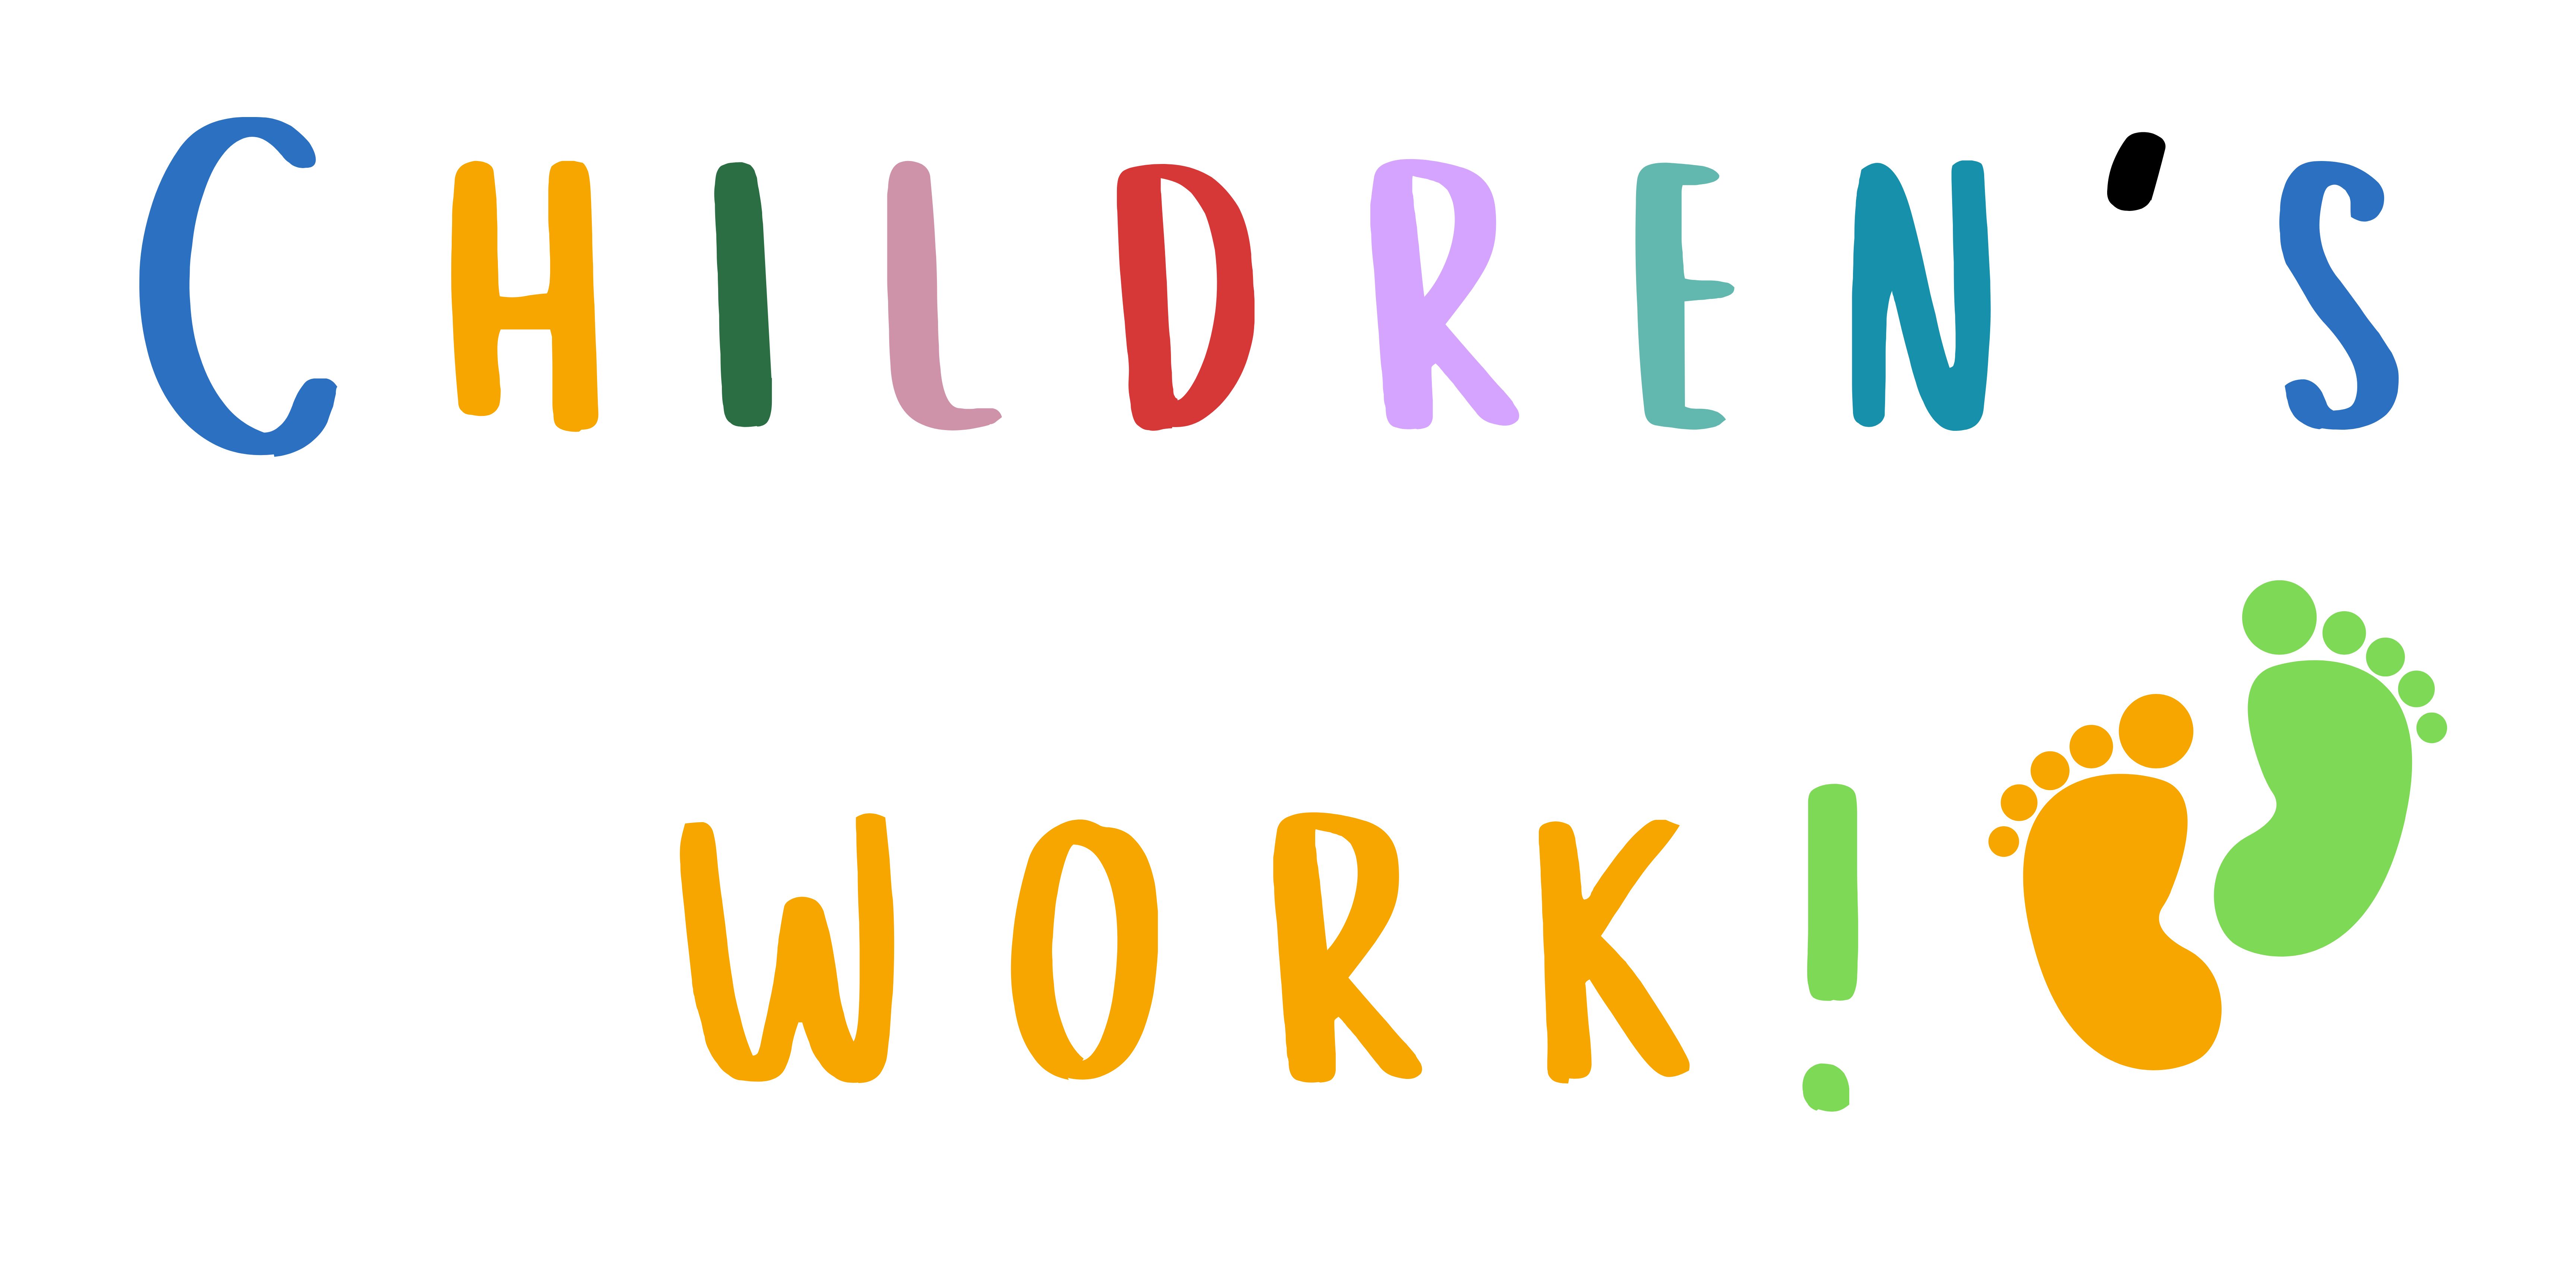 Children's work!